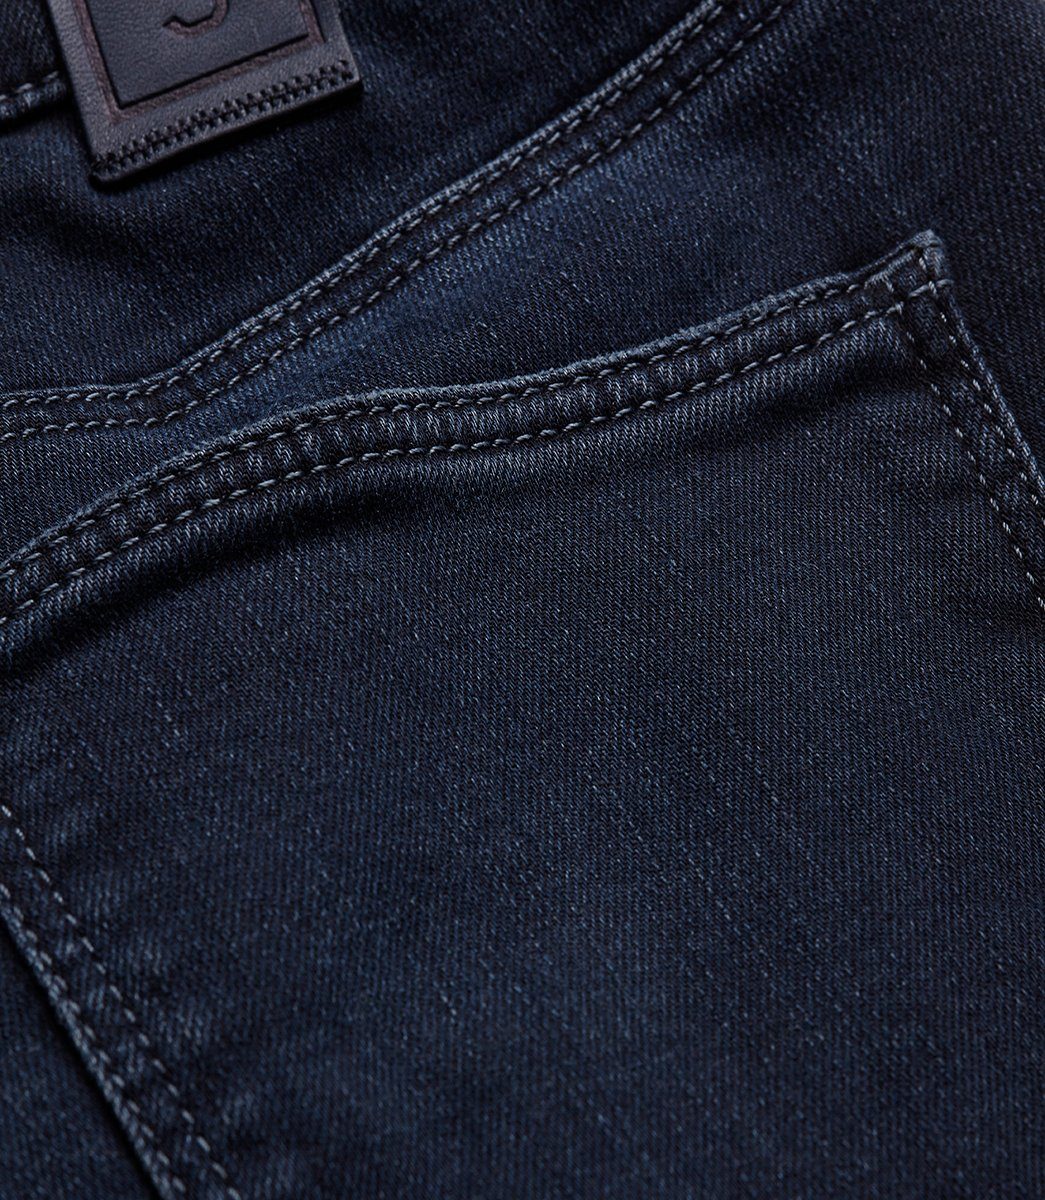 MEYER 5-Pocket-Jeans MEYER M5 blue SLIM blue 361-9-6228.18